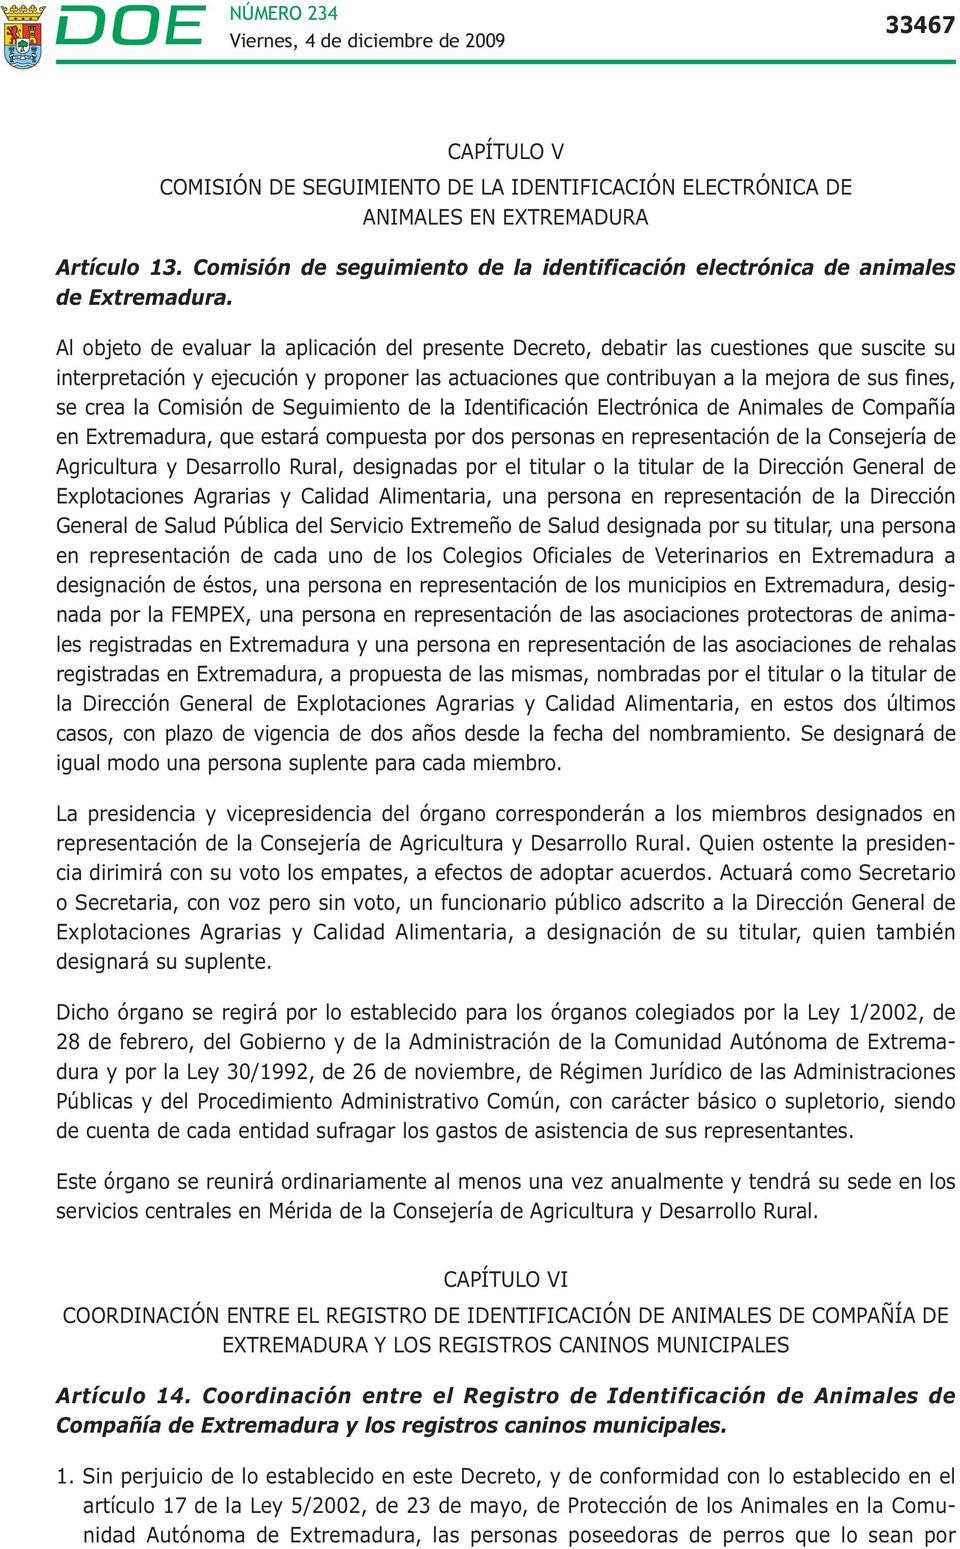 la Comisión de Seguimiento de la Identificación Electrónica de Animales de Compañía en Extremadura, que estará compuesta por dos personas en representación de la Consejería de Agricultura y